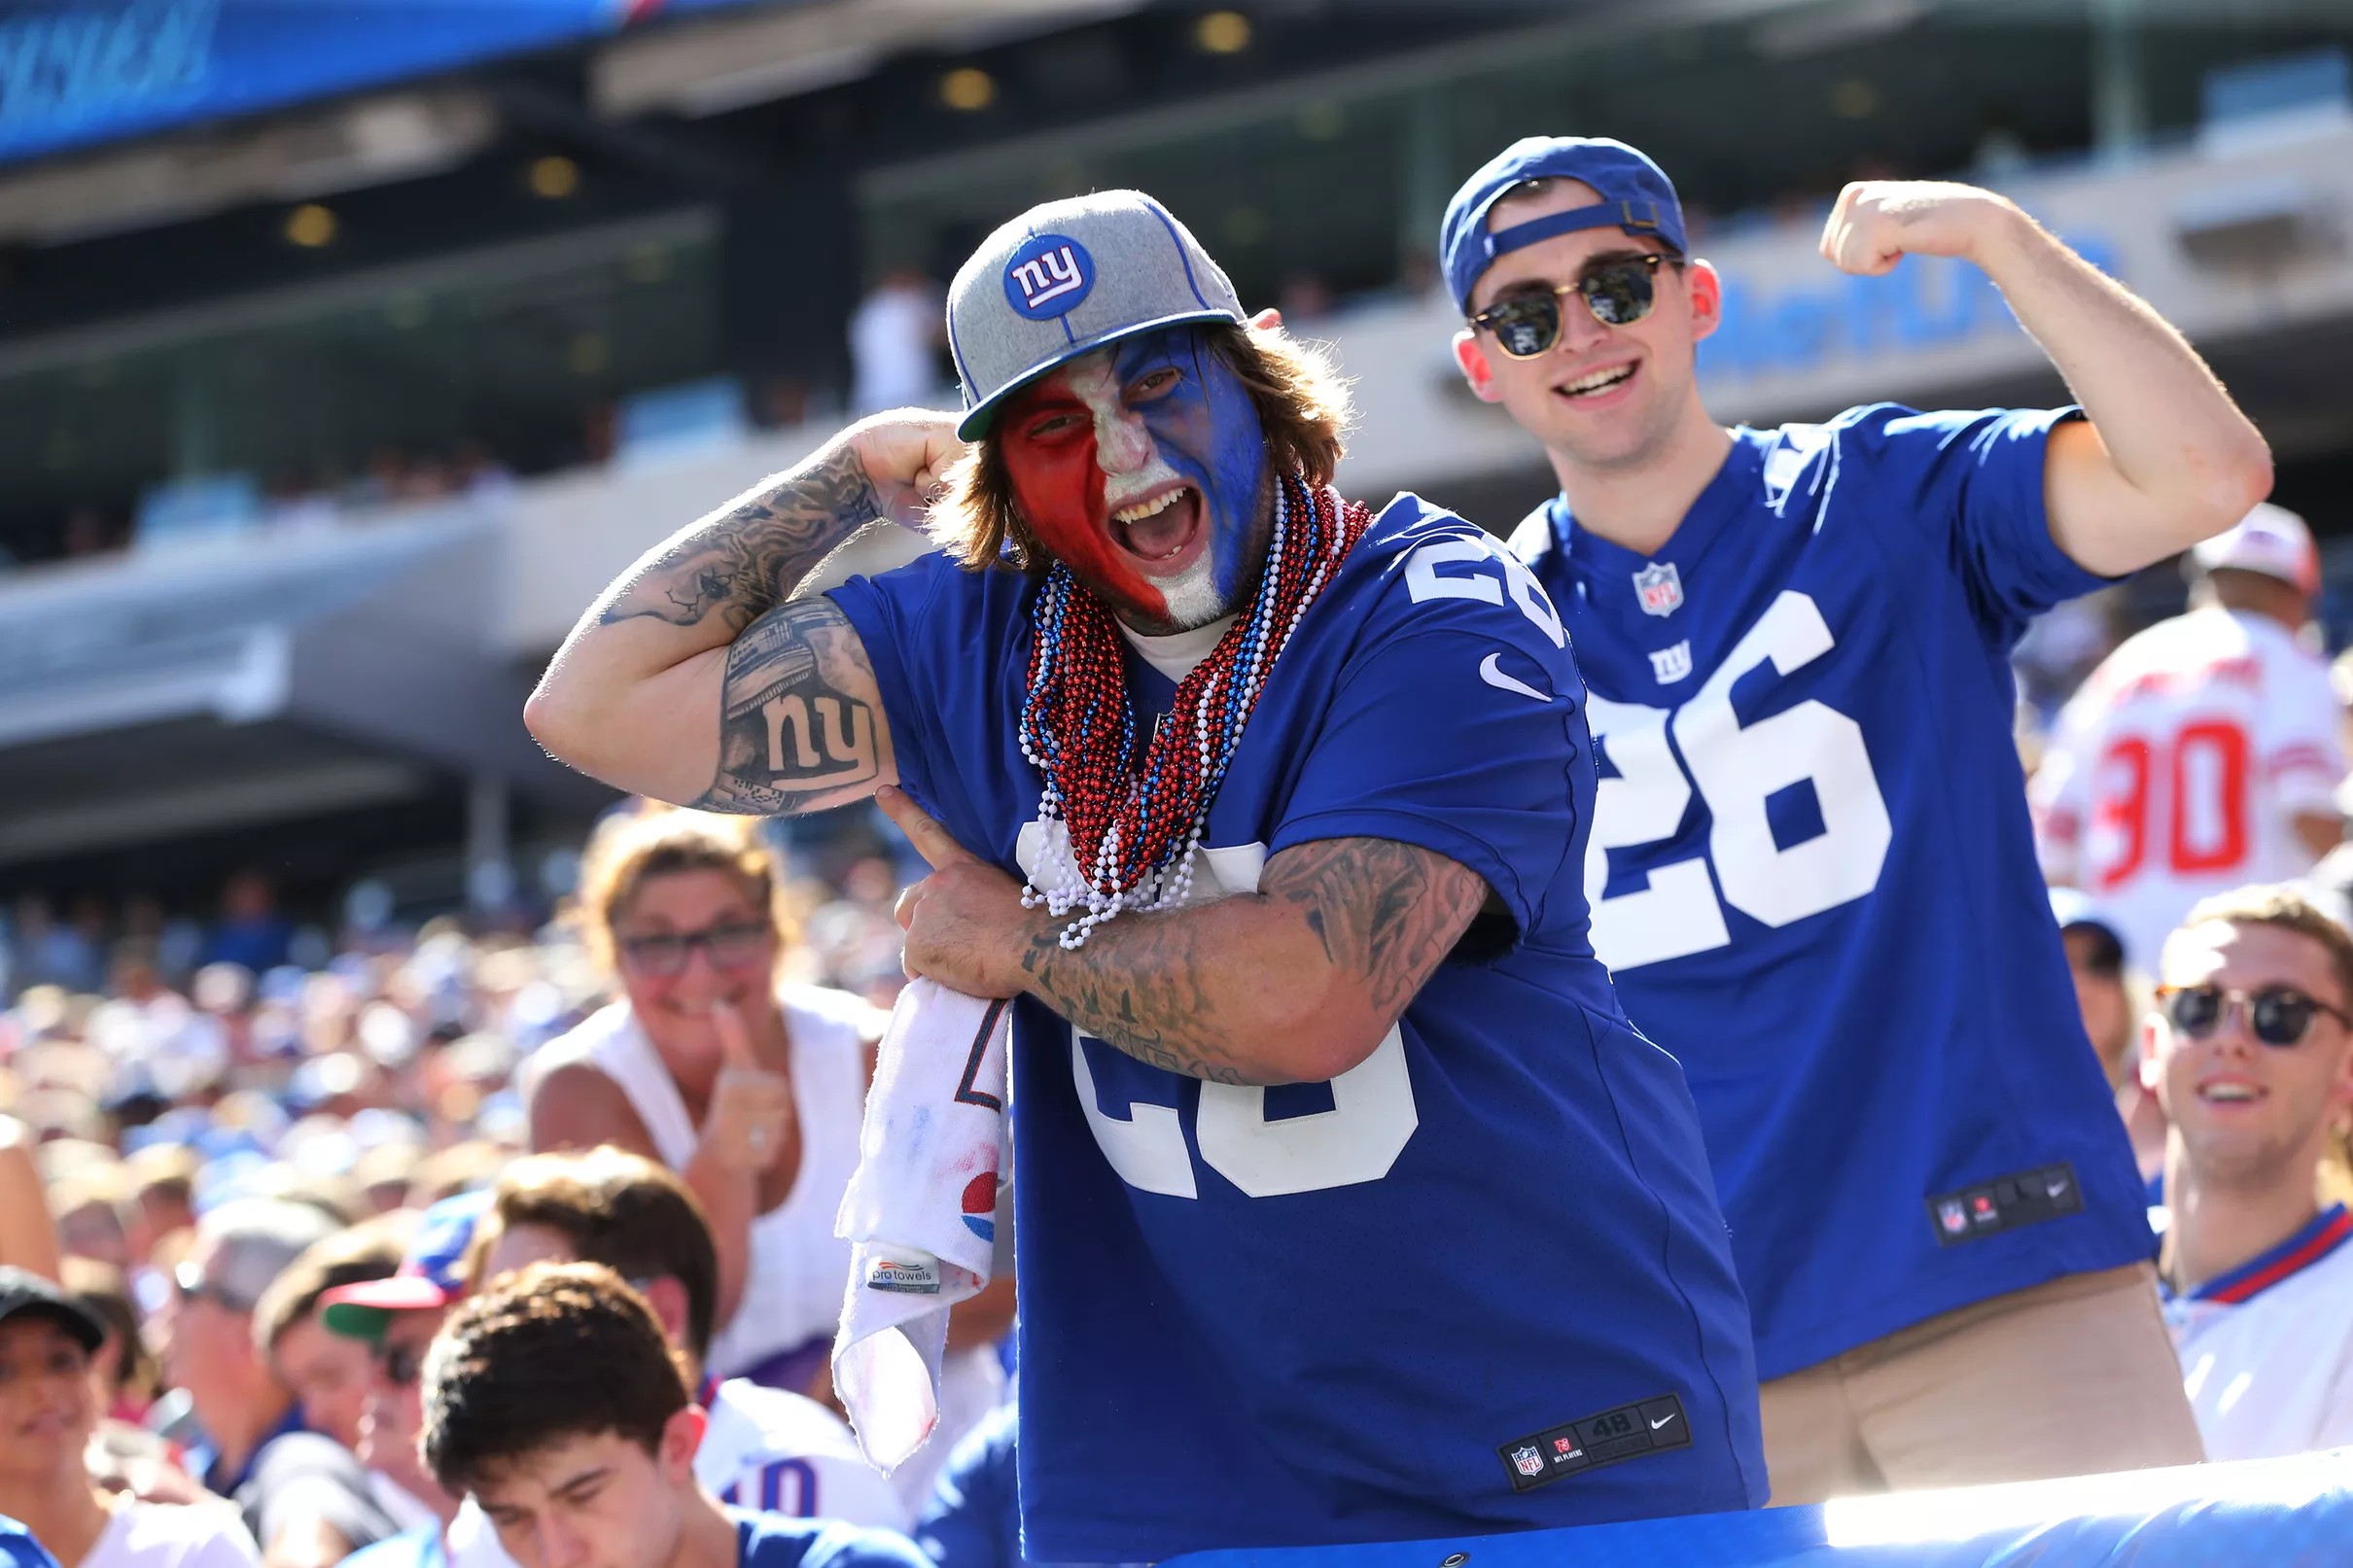 FanPulse Confidence of Giants fans skyrockets